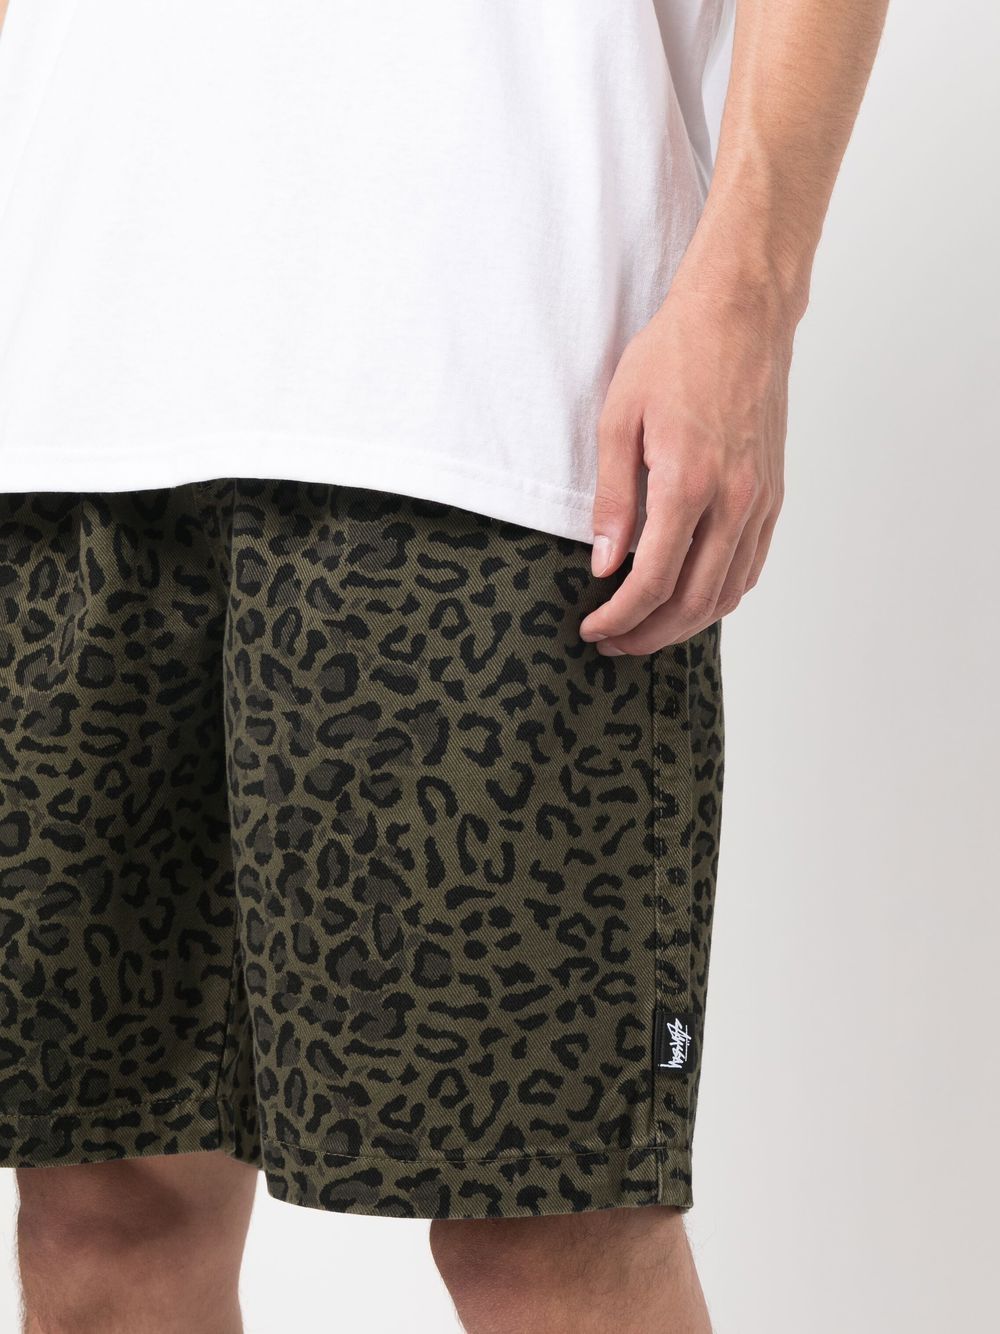 【最安値得価】stussy leopard beach shorts パンツ